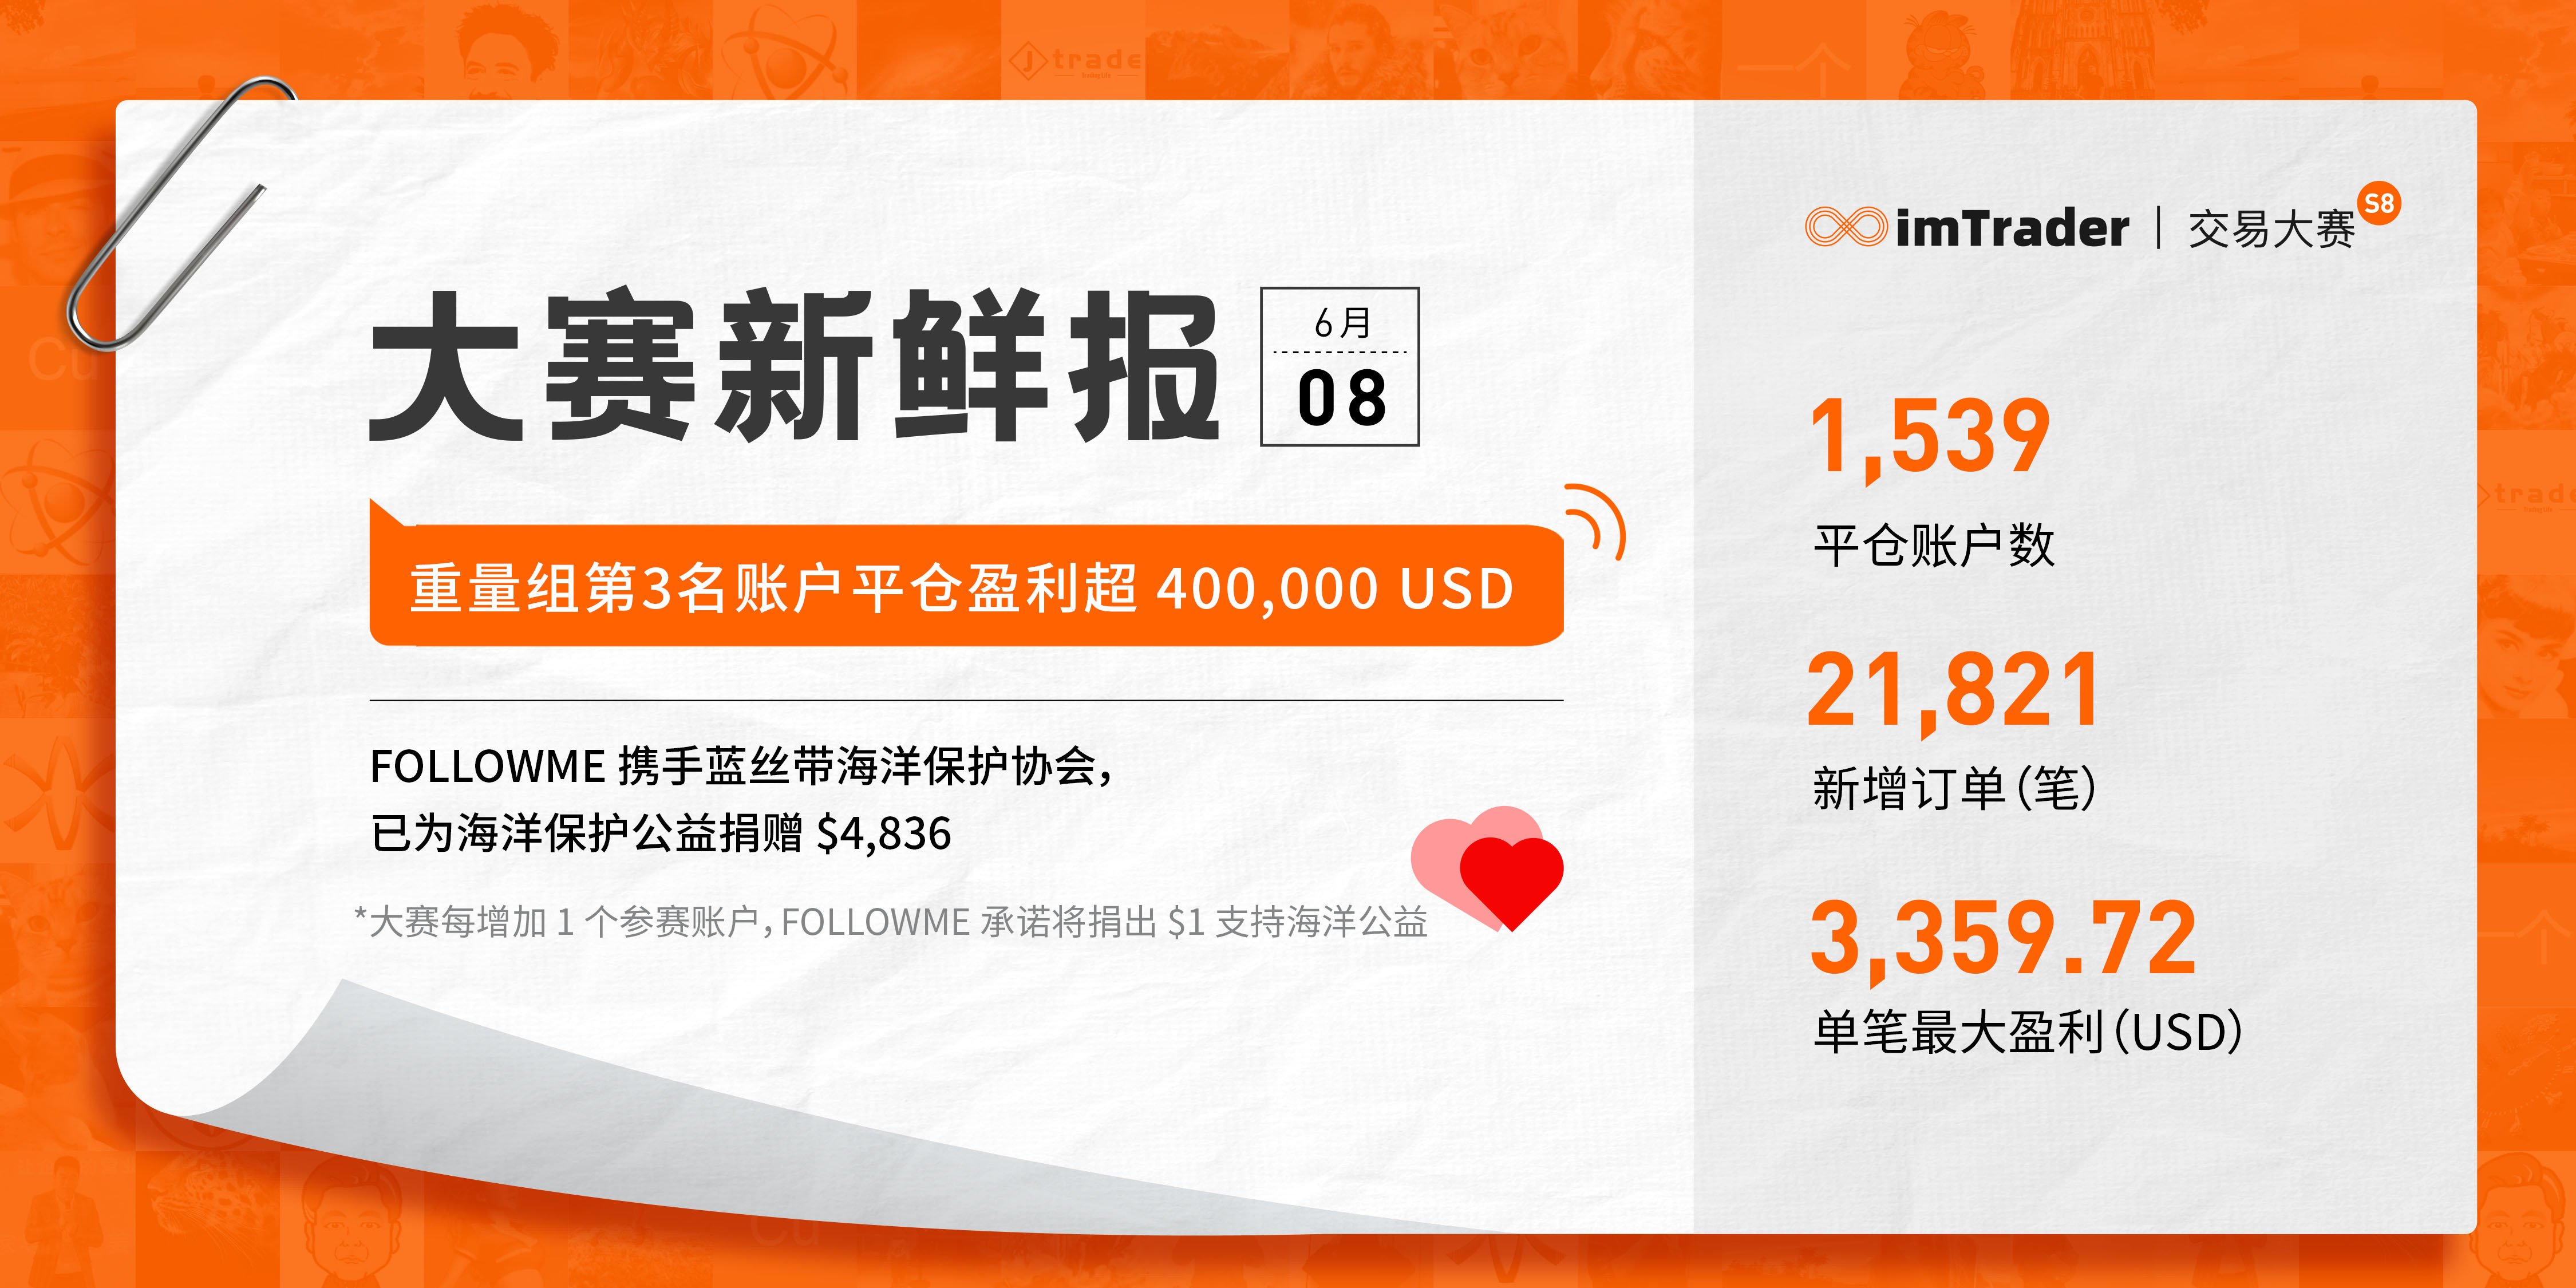 6月8日大赛新鲜报丨重量组第3名账户平仓盈利超 400,000 USD！